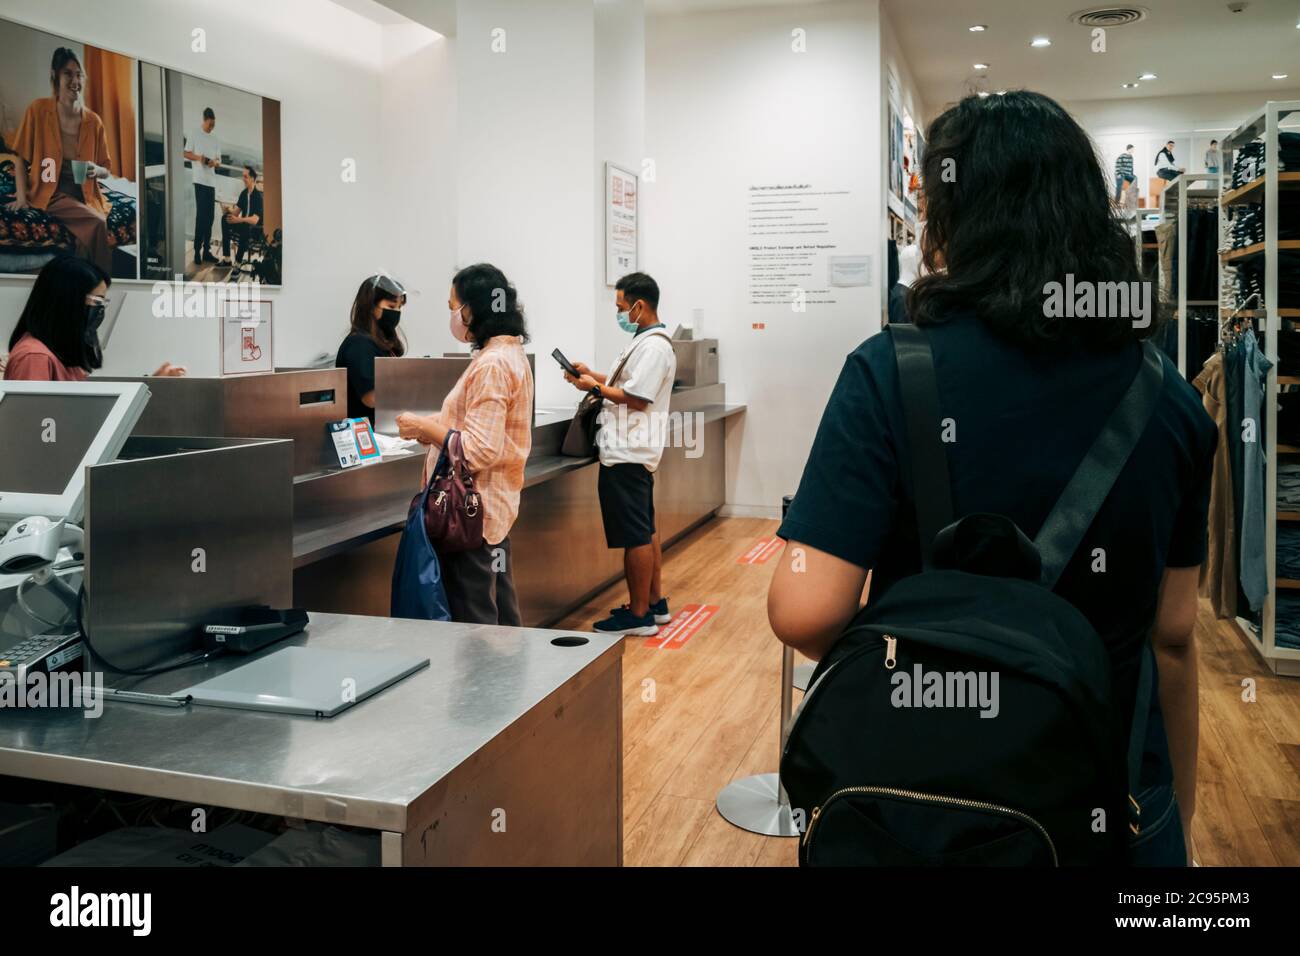 Bangkok, Thailand - 3. August 2020 : Asiatische Kunden in der Warteschlange bezahlen Kleidung an der Theke in Bekleidungsgeschäft in covid-19 Pandemie Krise. Stockfoto